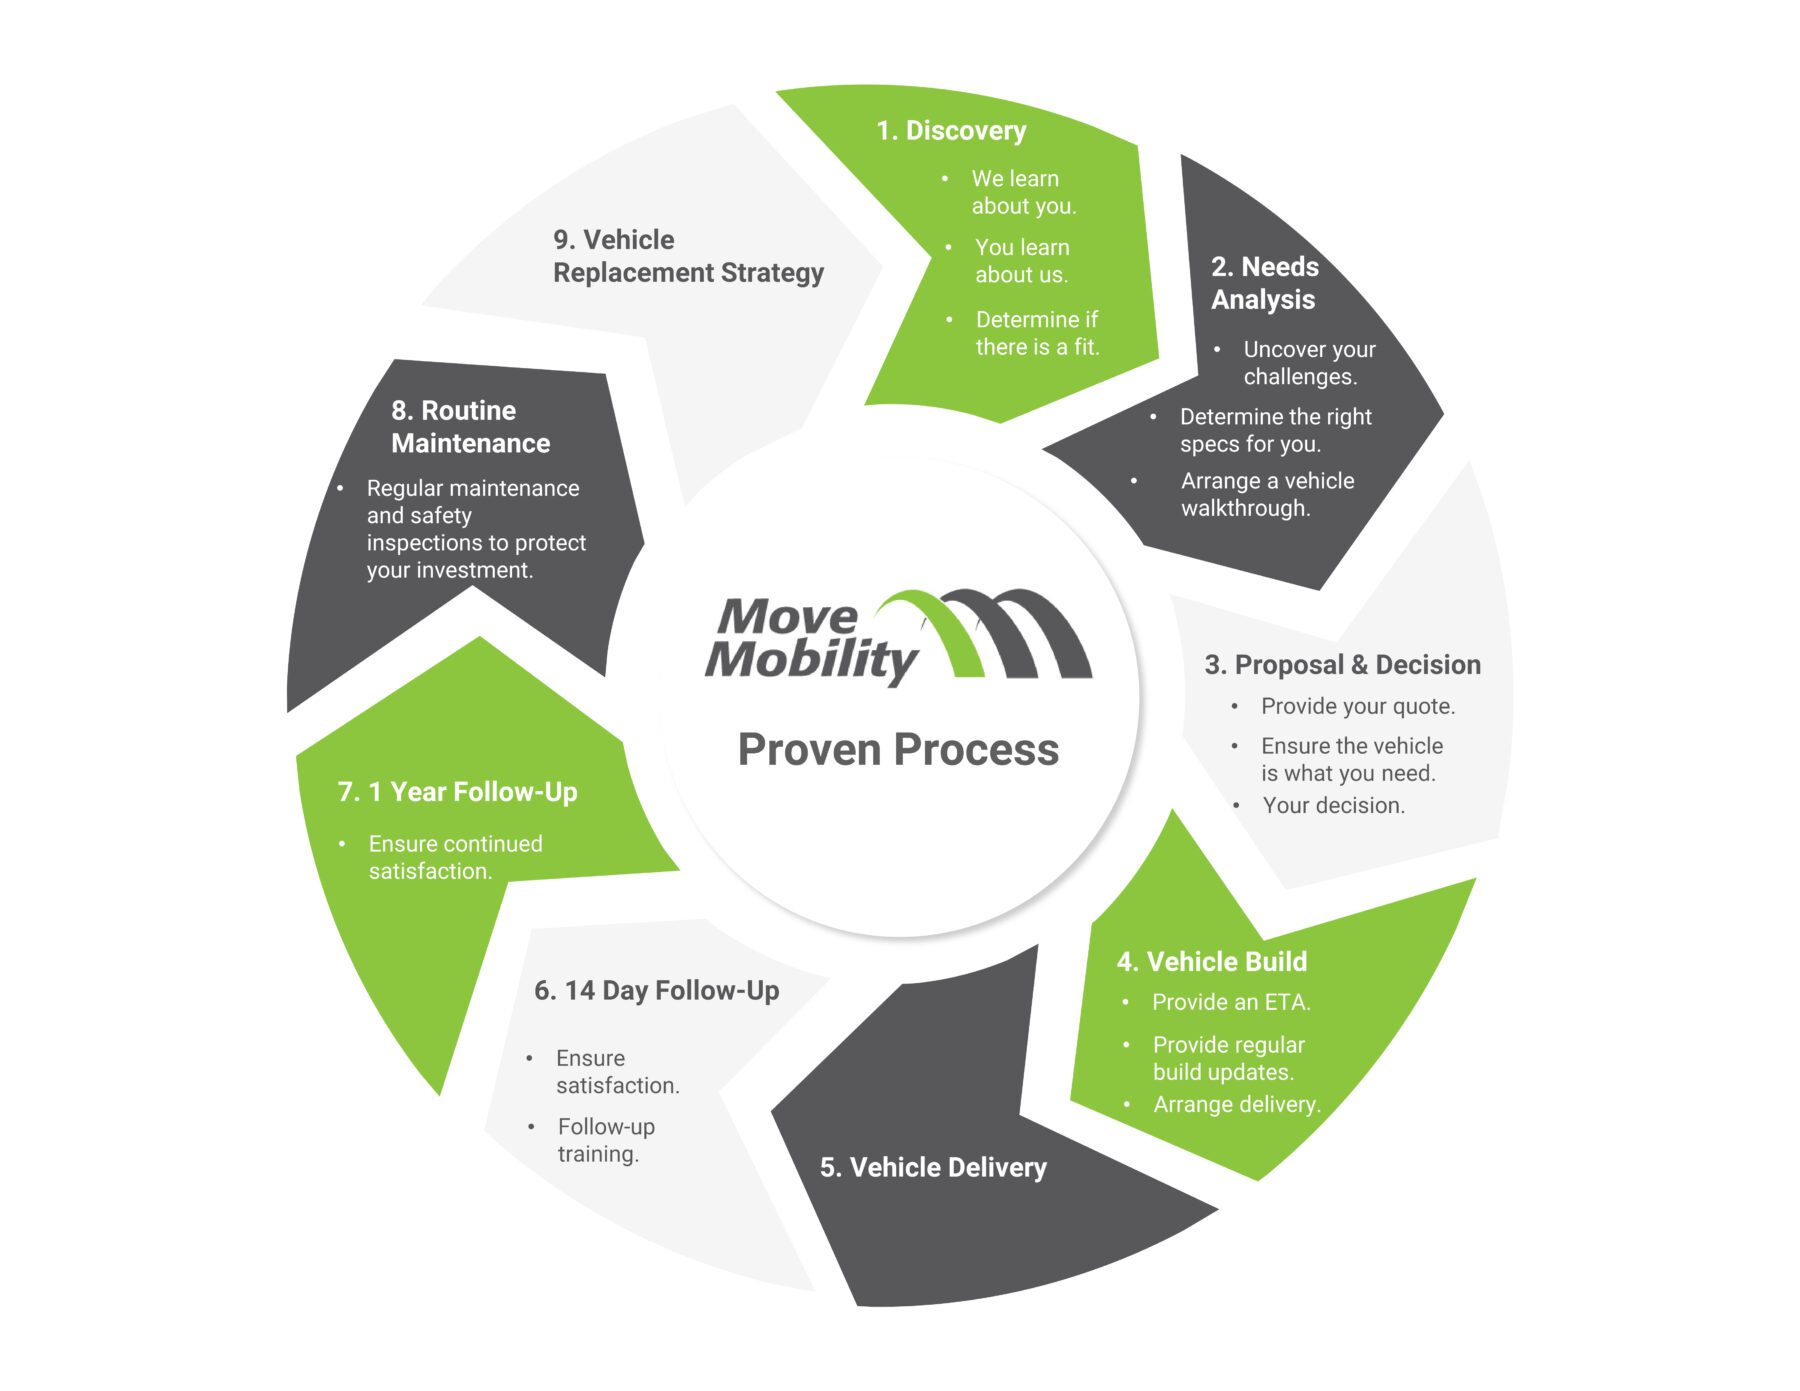 MoveMobility Proven Process